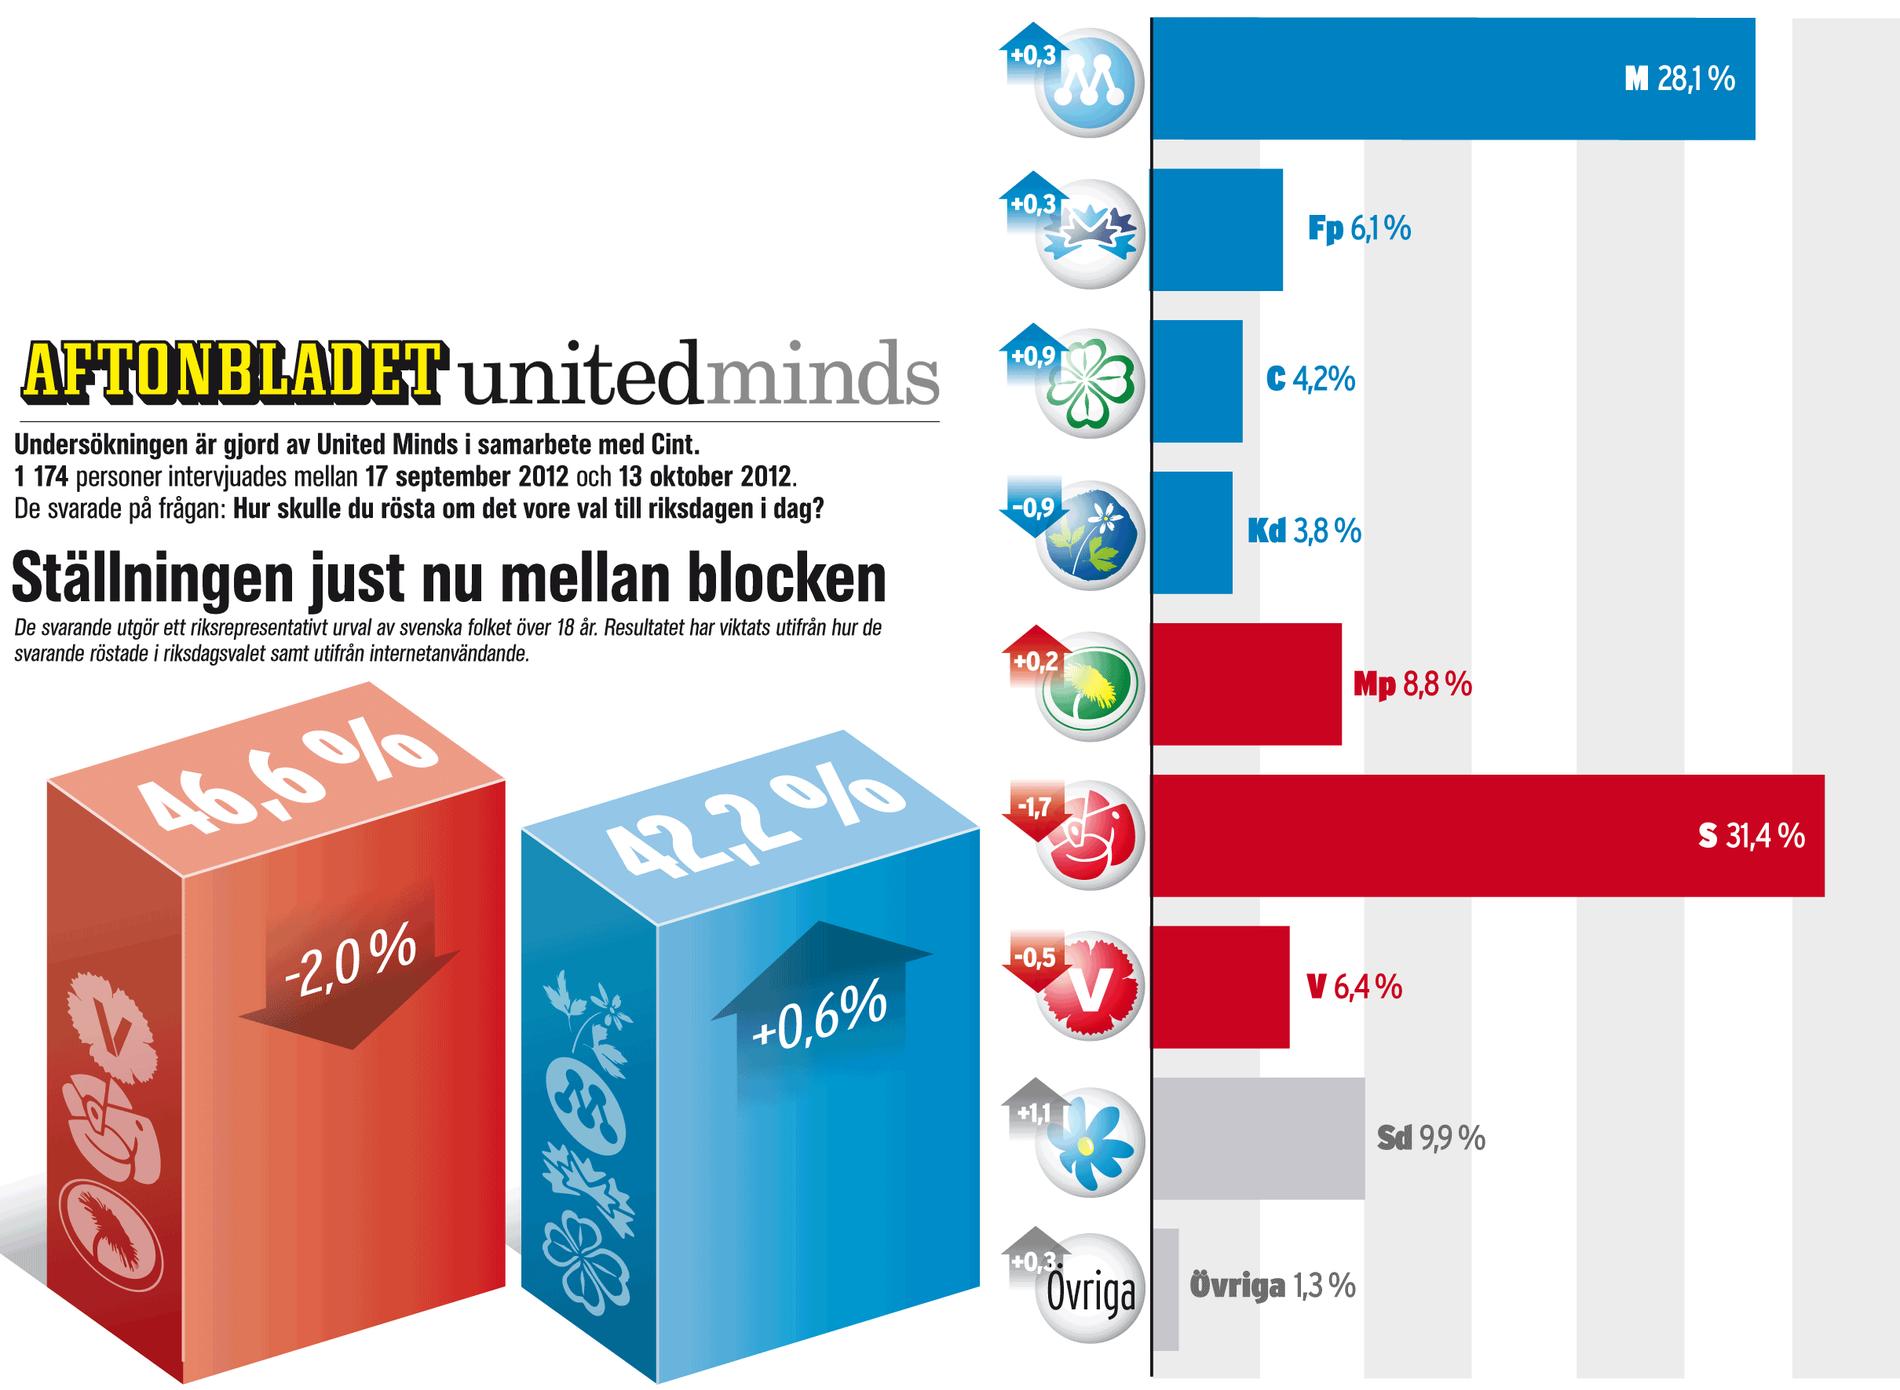 Aftonbladet/United Minds väljarundersökning från oktober 2012. Så här såg det ut då.